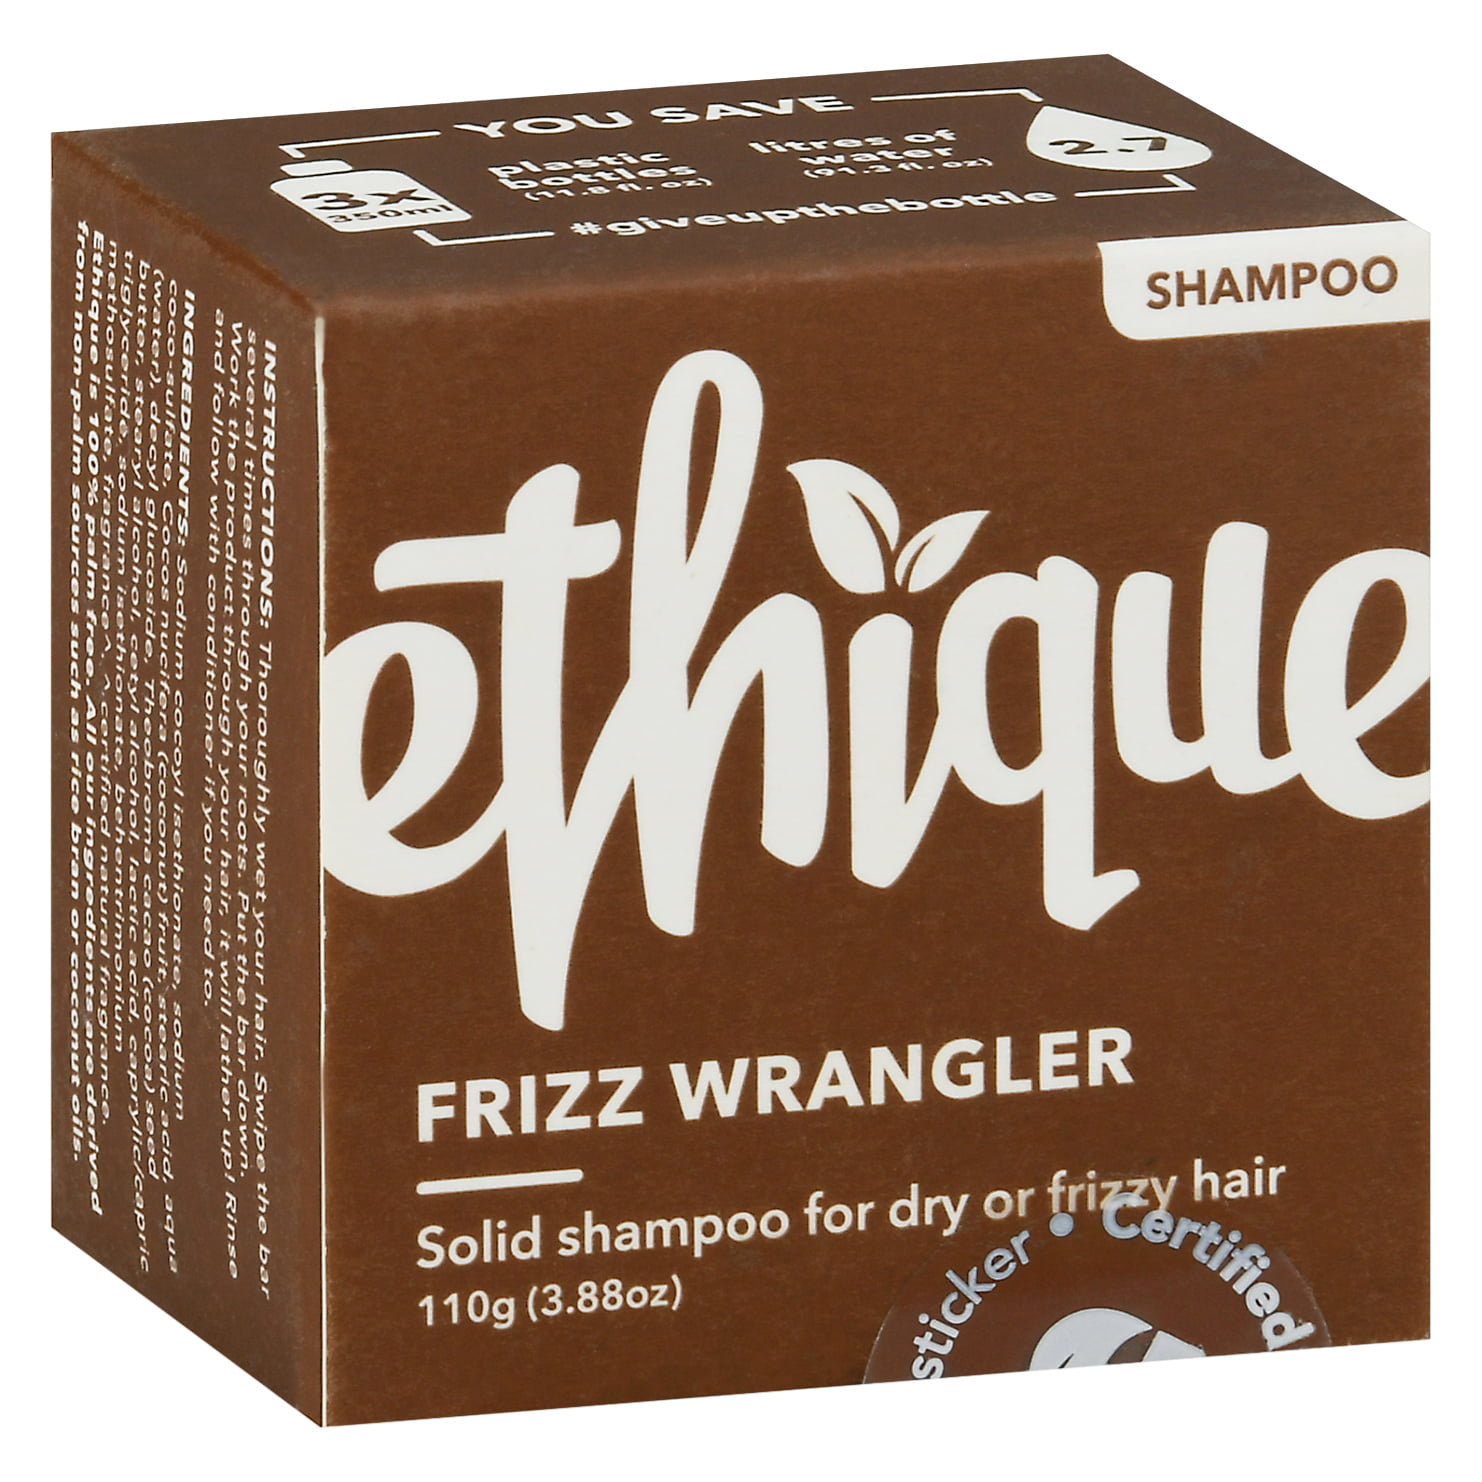 Ethique Eco-Friendly Solid Shampoo Bar, Frizz Wrangler  oz 